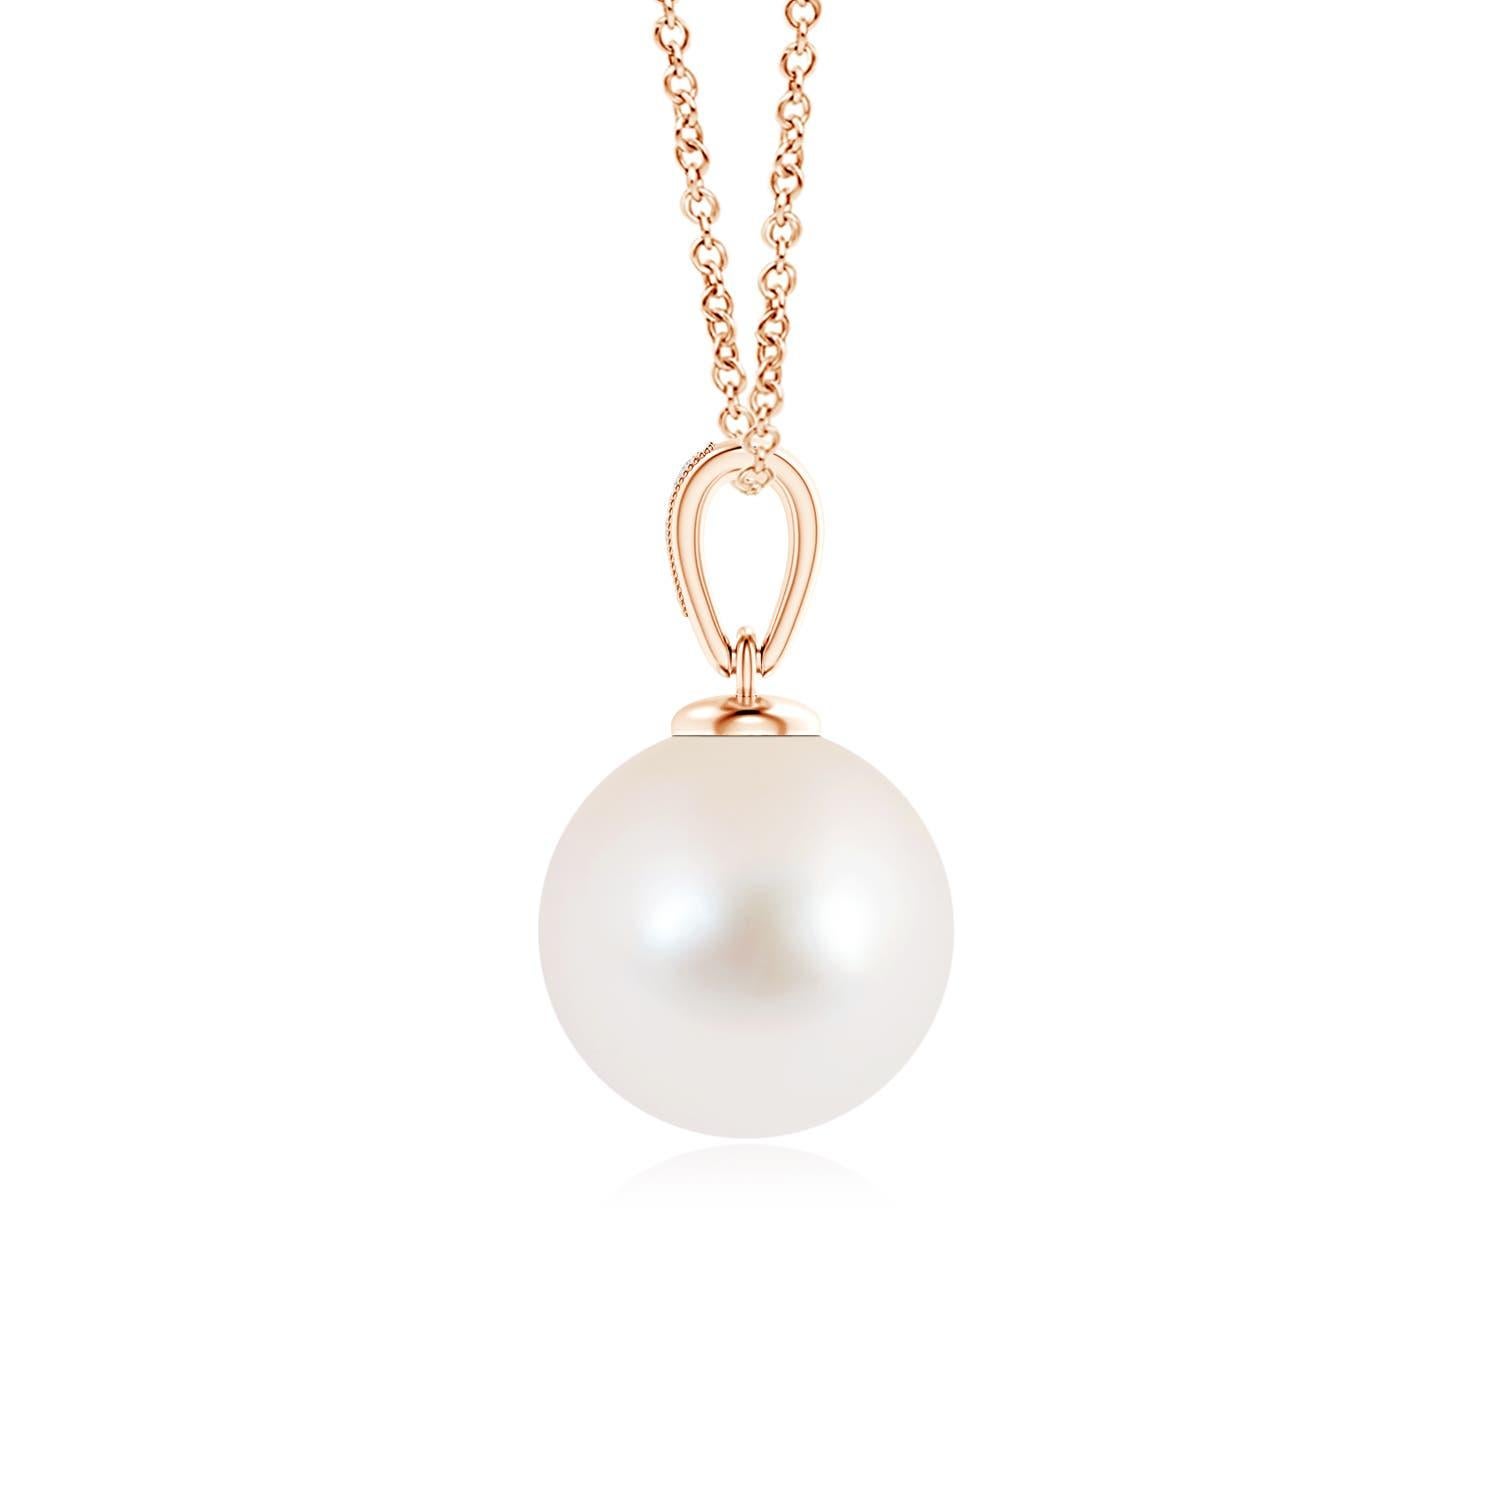 Ce pendentif perle solitaire en or rose 14K offre un look simple mais élégant. Les diamants sertis en pavé sur la balle offrent un effet scintillant à la perle lustrée, tandis que le détail de milgrain sur la balle confère une légère touche vintage.